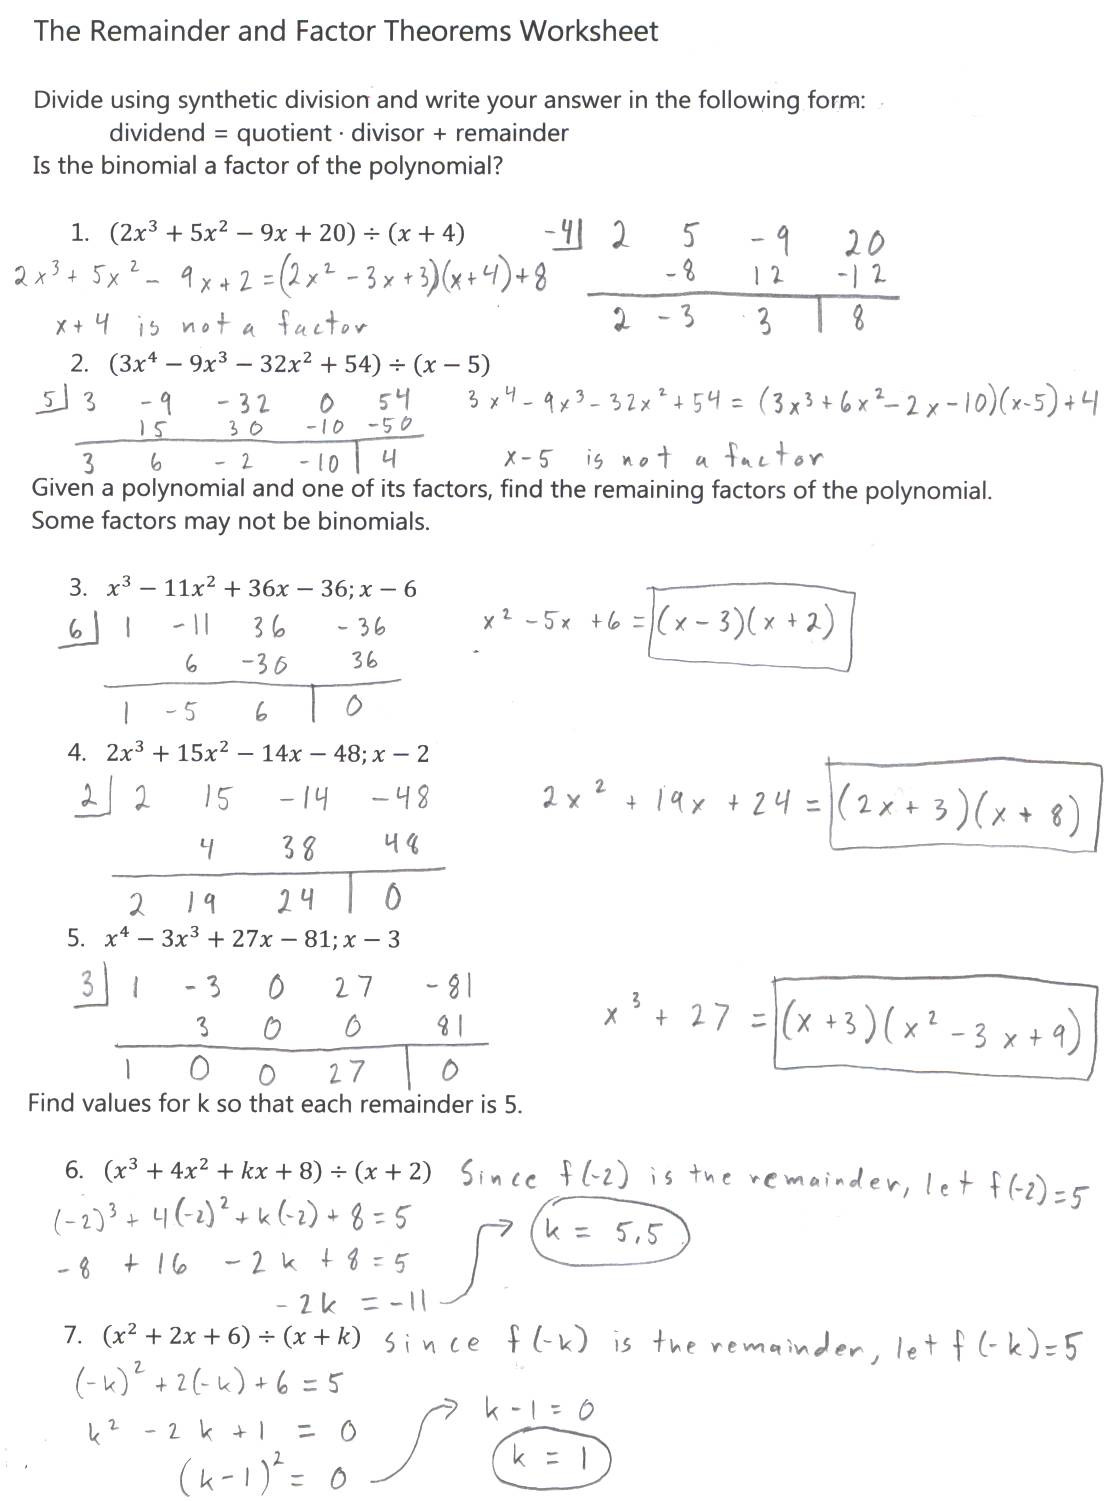 Long Division Polynomials Worksheet 34 Algebra 2 Dividing Polynomials Worksheet Answers